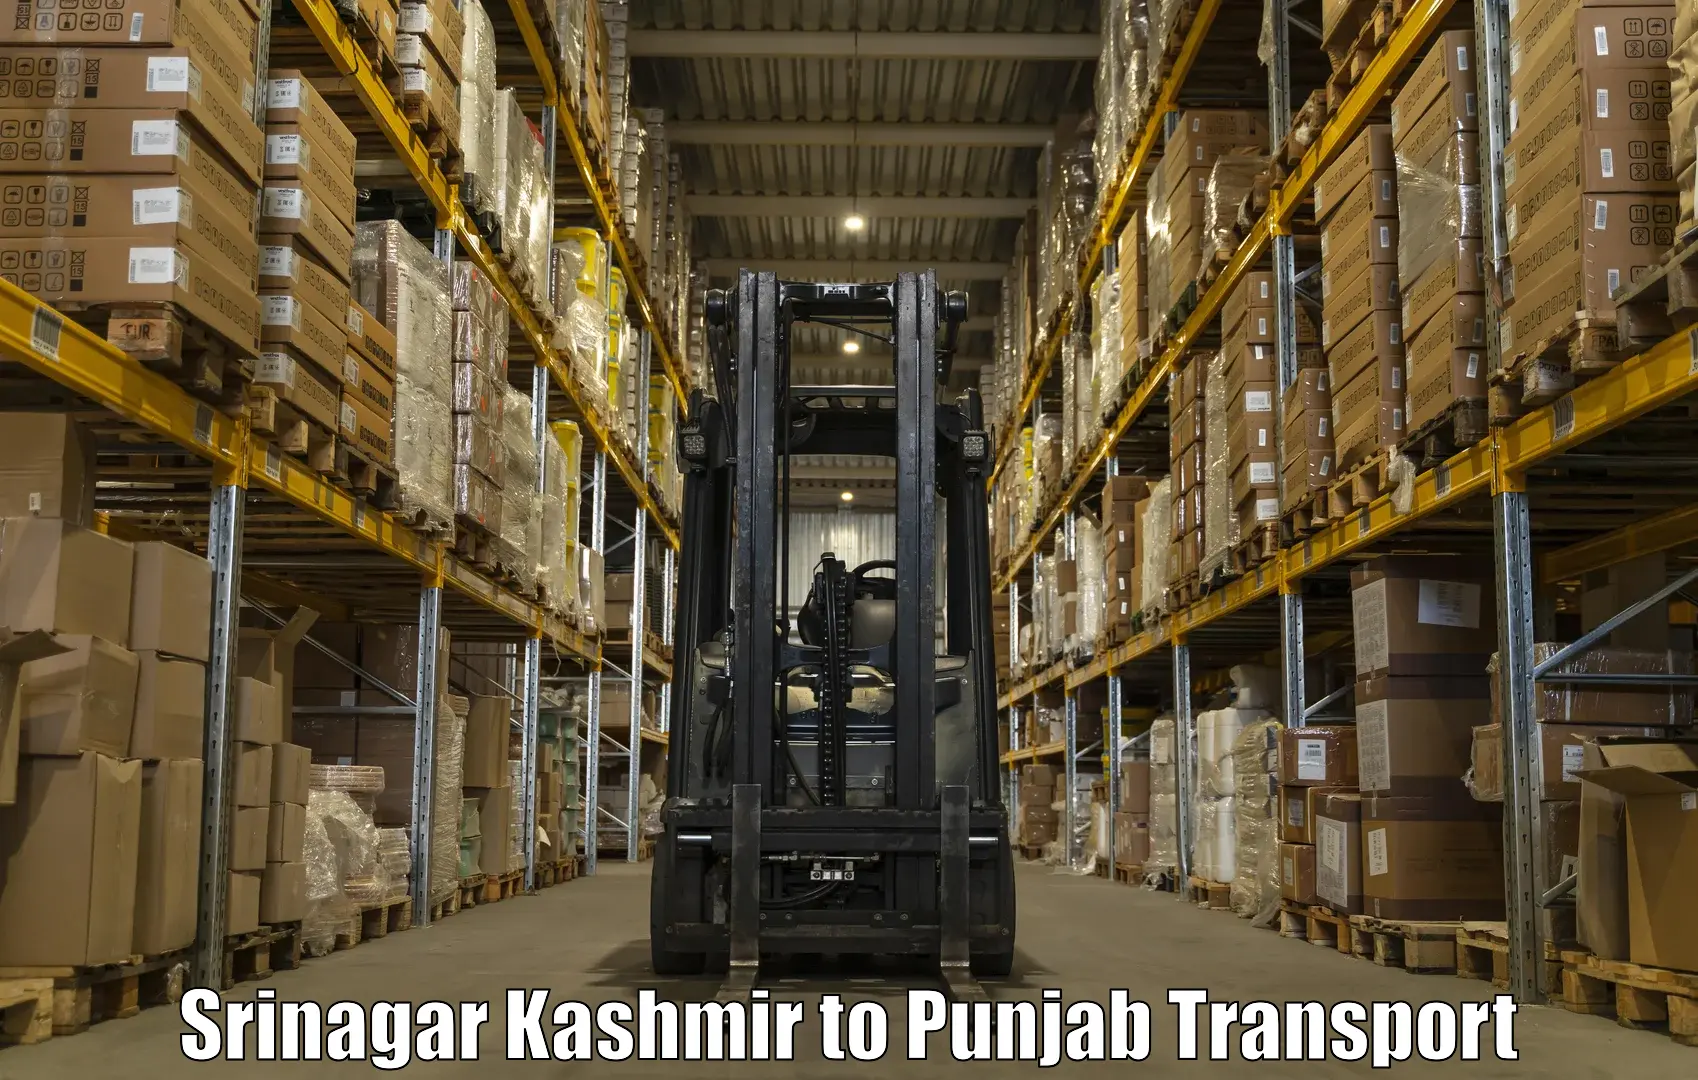 Furniture transport service Srinagar Kashmir to Anandpur Sahib